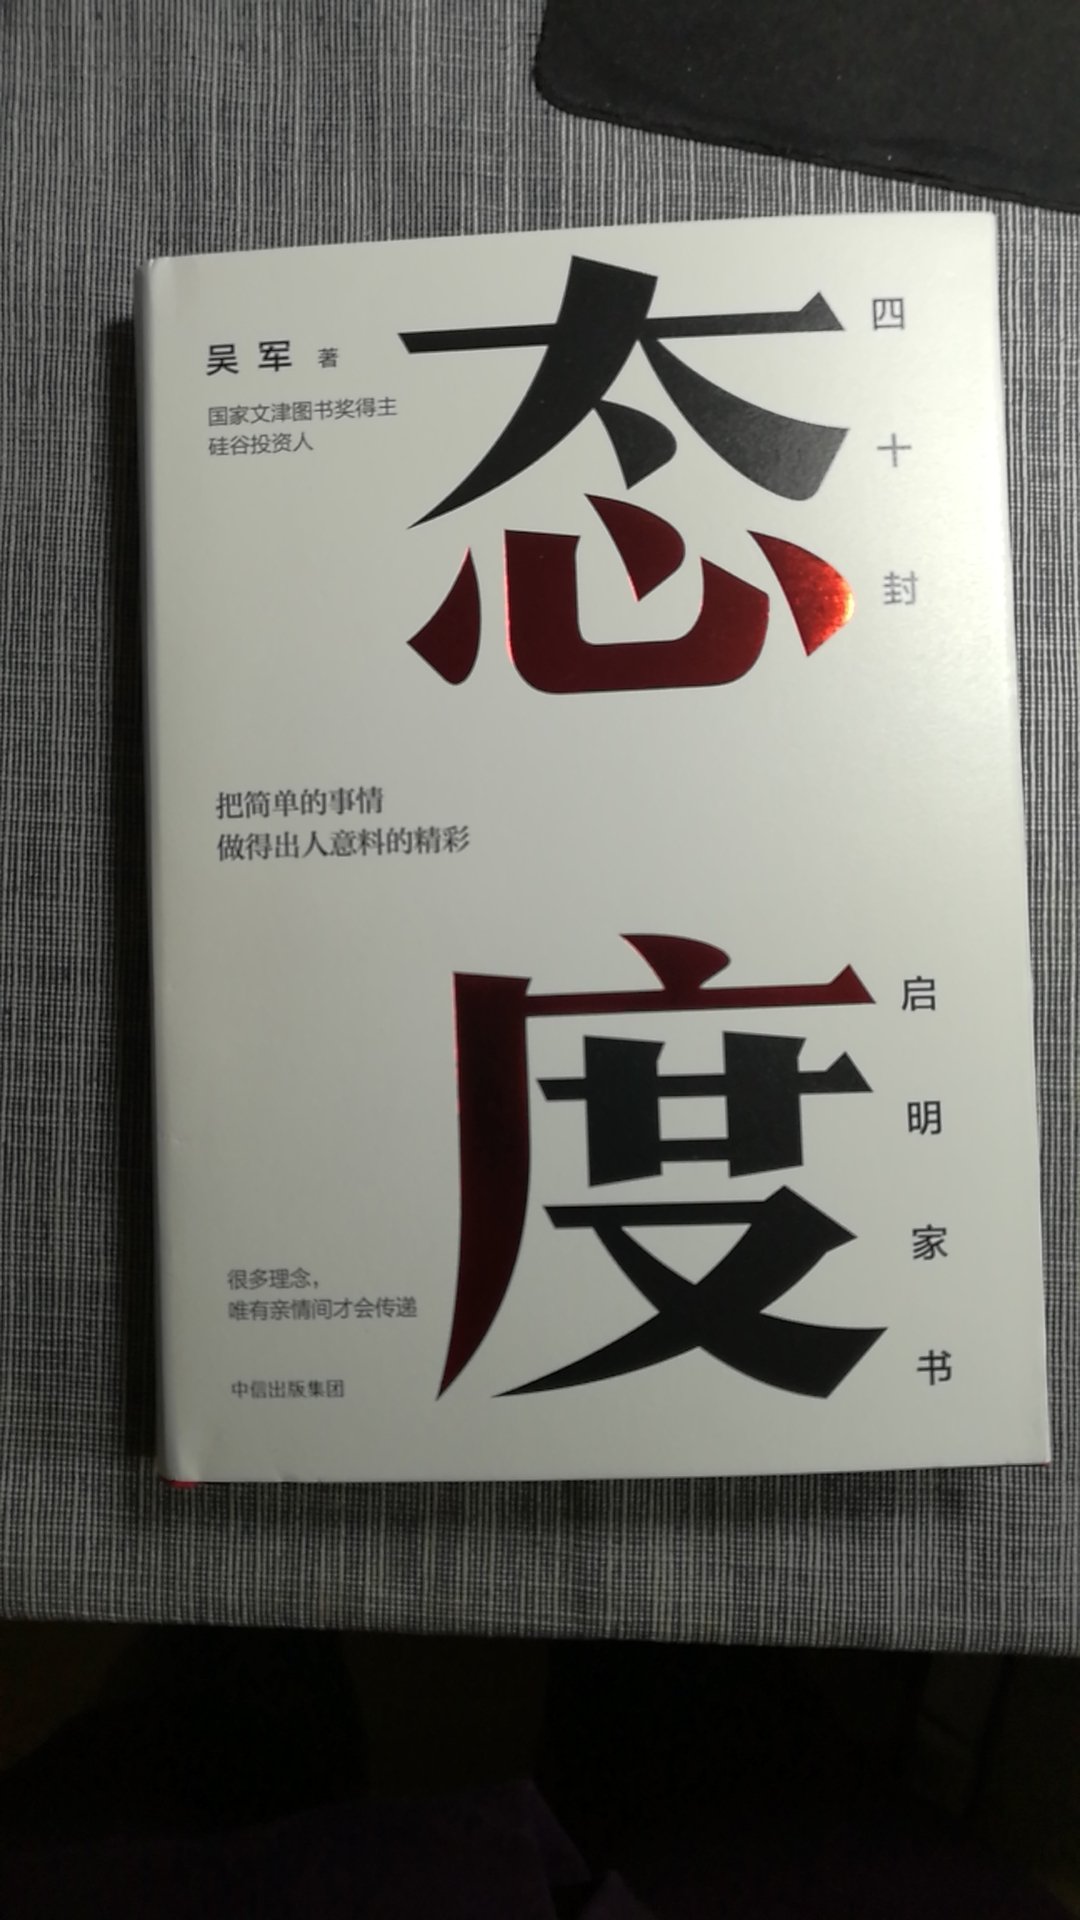 吴军老师的书很有营养，希望更重质量。